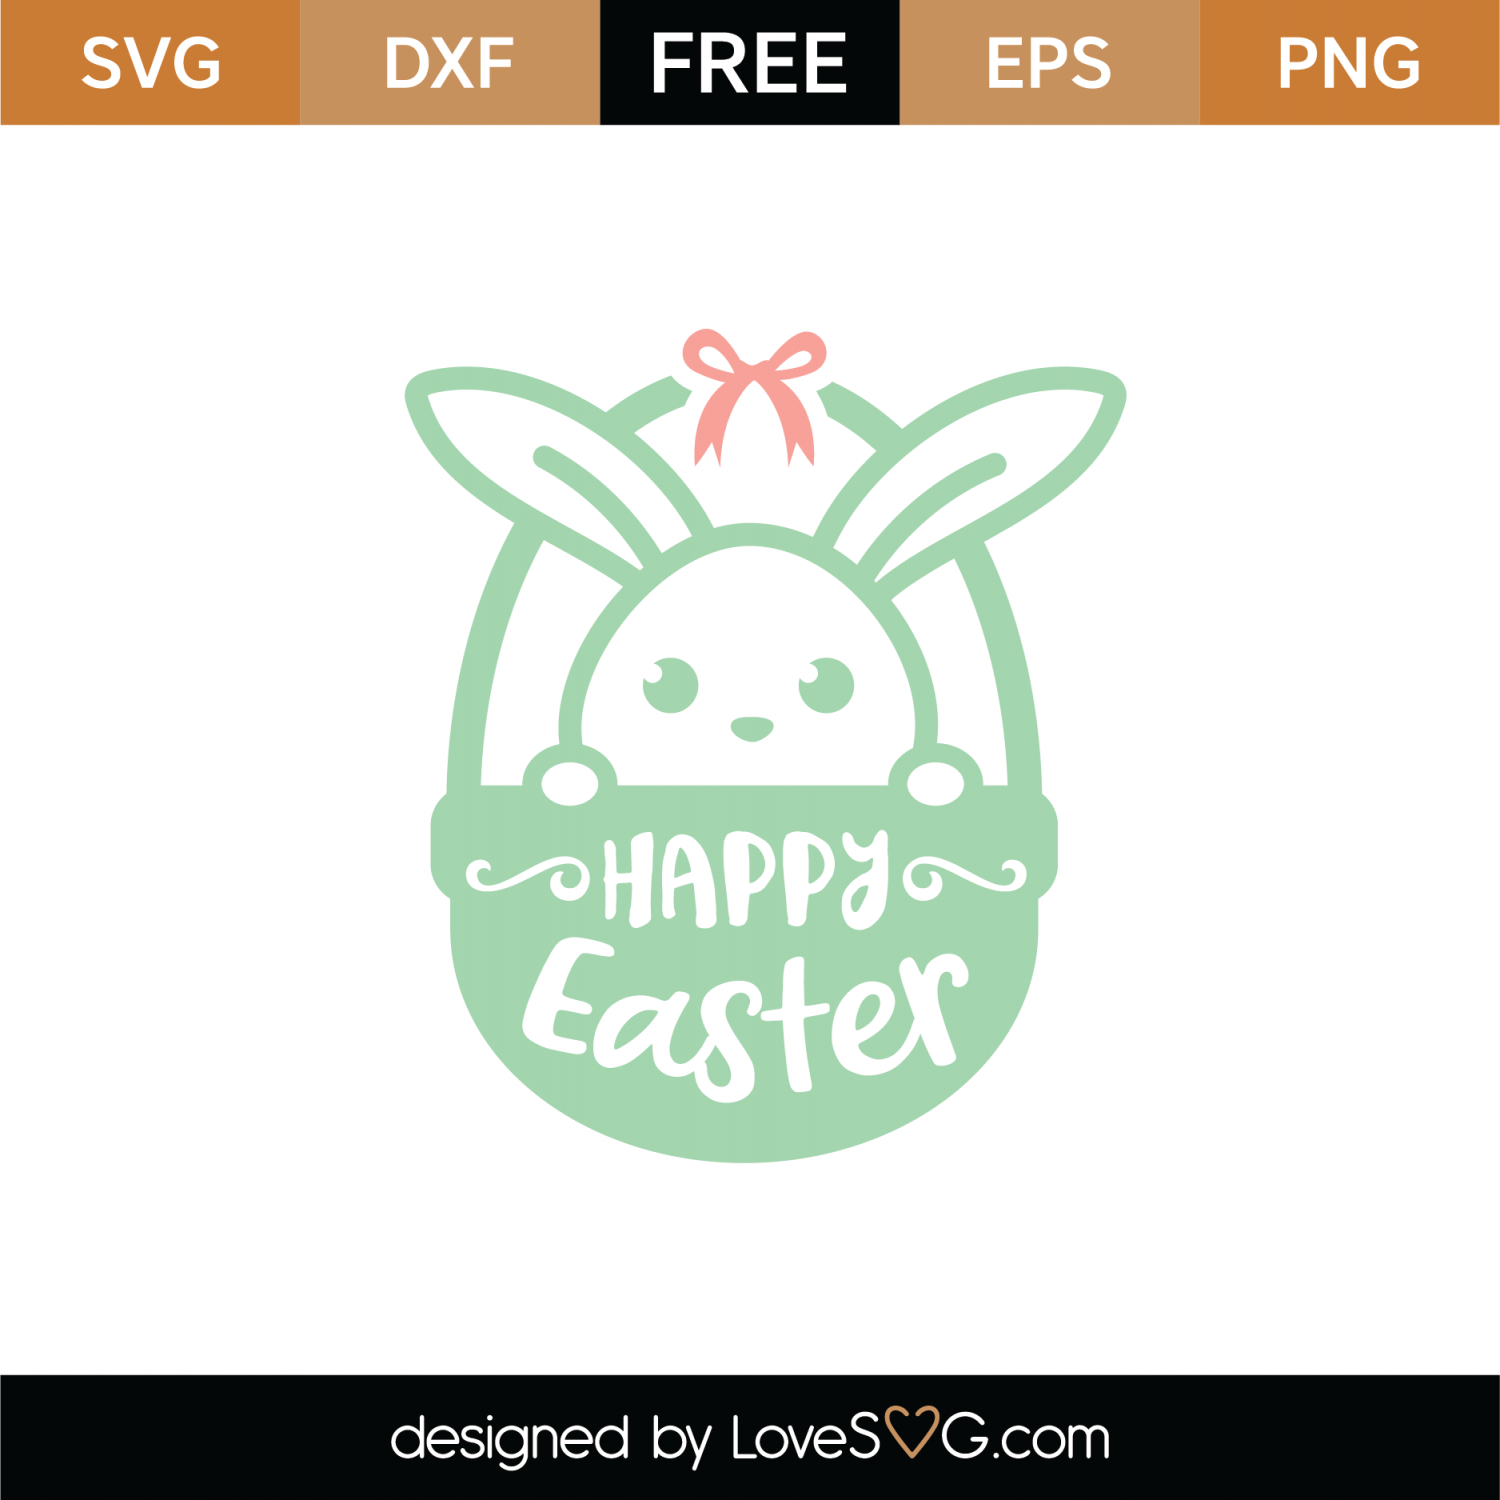 Free Happy Easter Basket SVG Cut File | Lovesvg.com